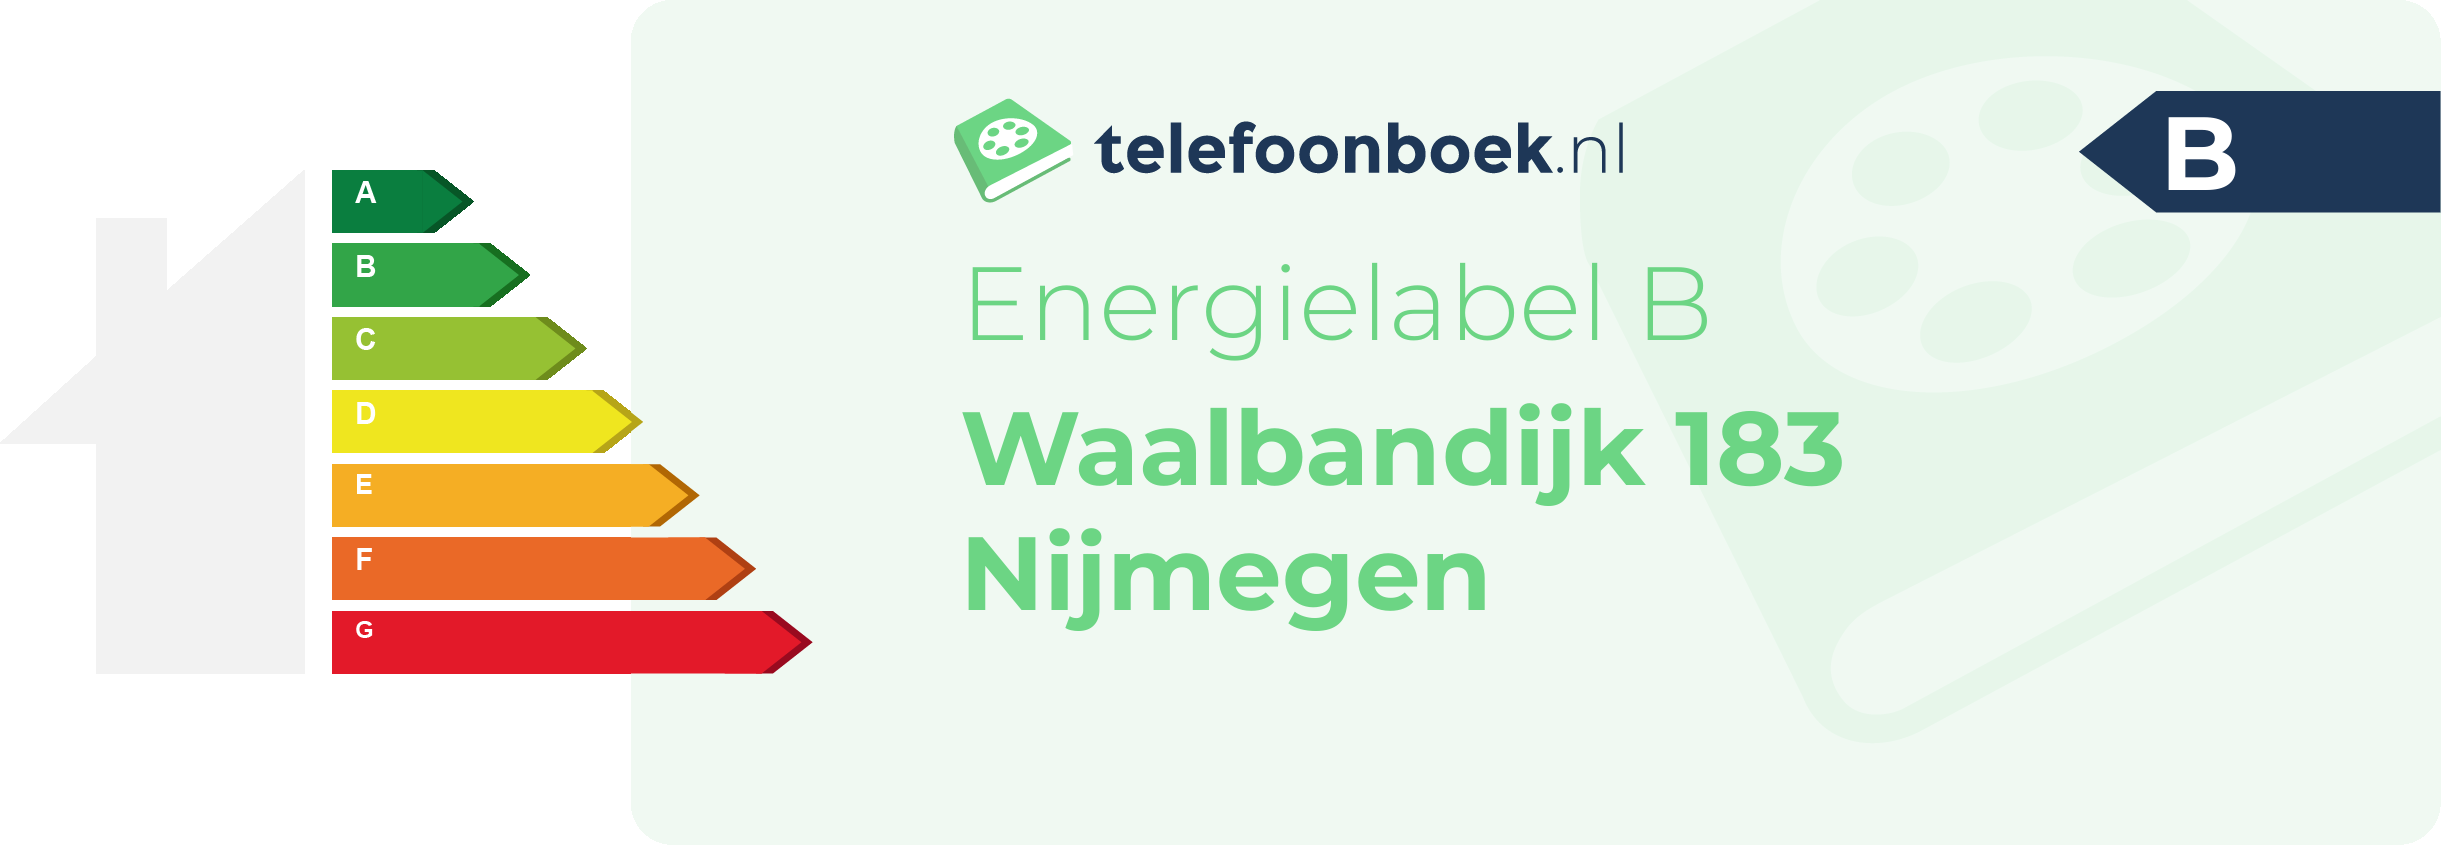 Energielabel Waalbandijk 183 Nijmegen